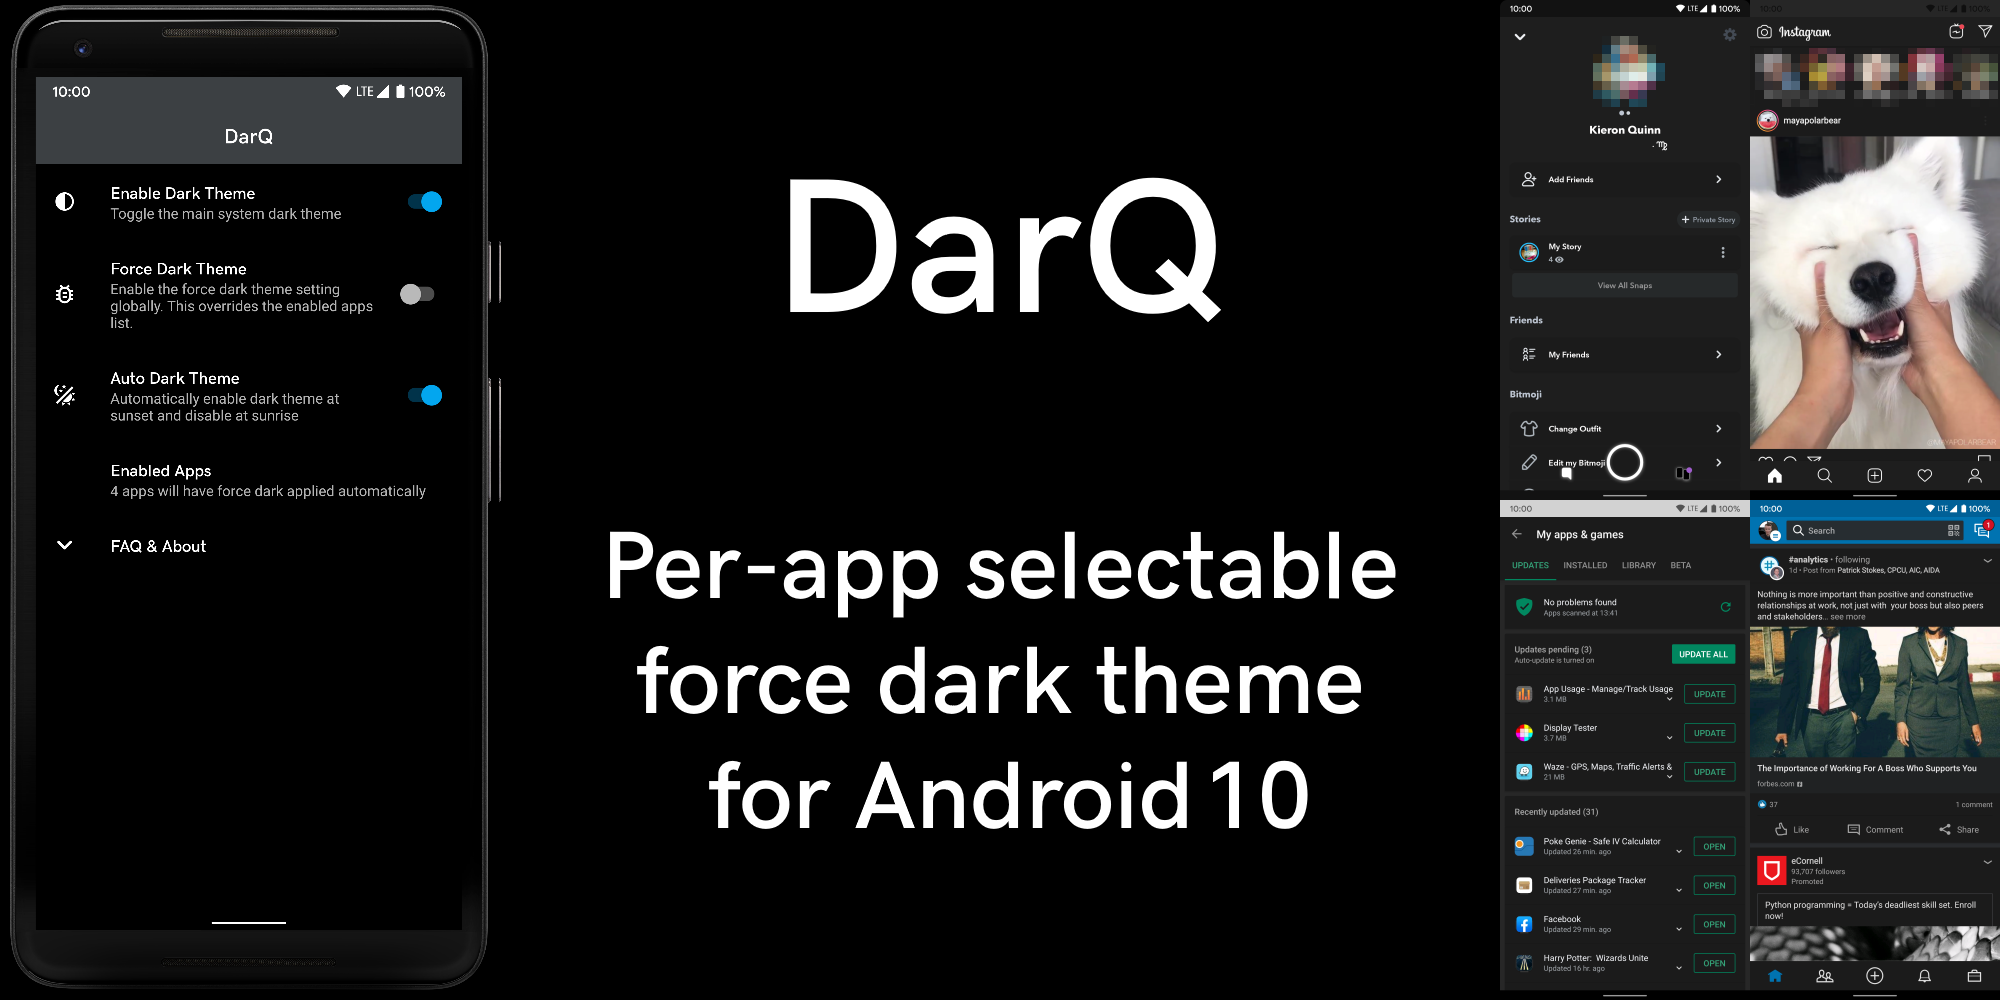 تطبيق جدولة الوضع المظلم لكل تطبيق DarQ يعمل الآن بدون الحاجة إلى روت